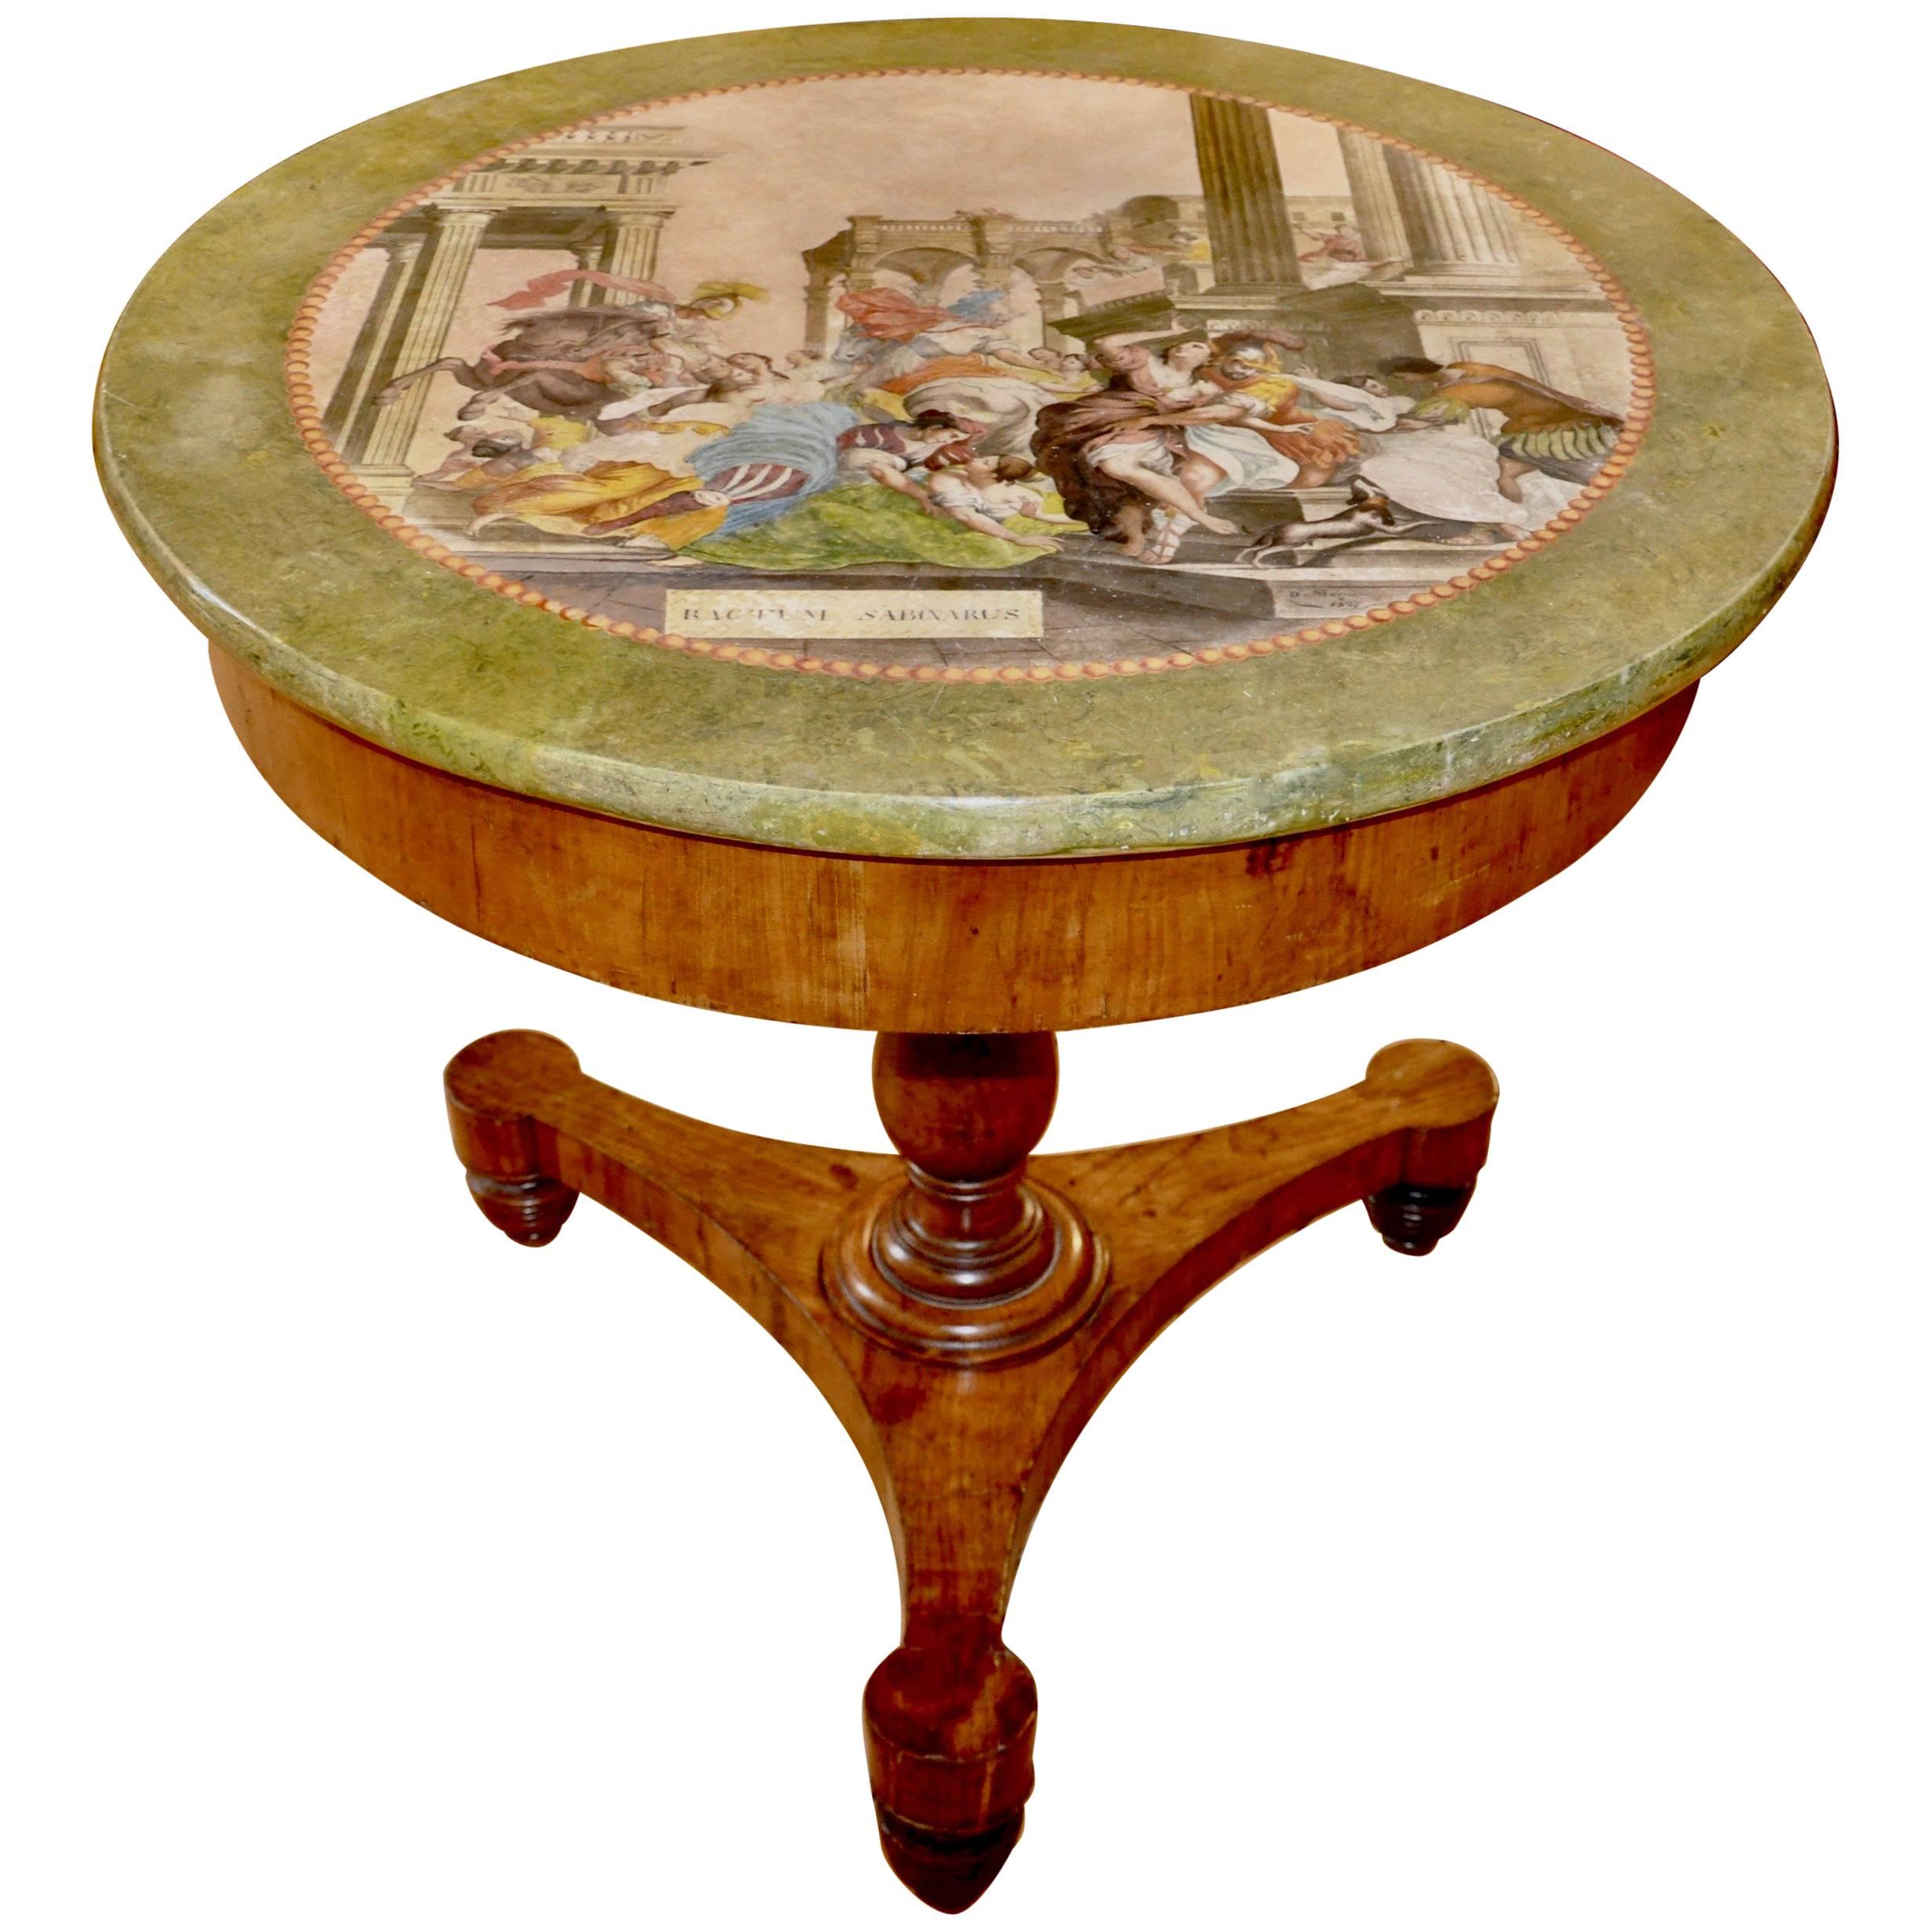 Rare and Period Italian Neoclassical Scagliola Centre Table or Gueridon